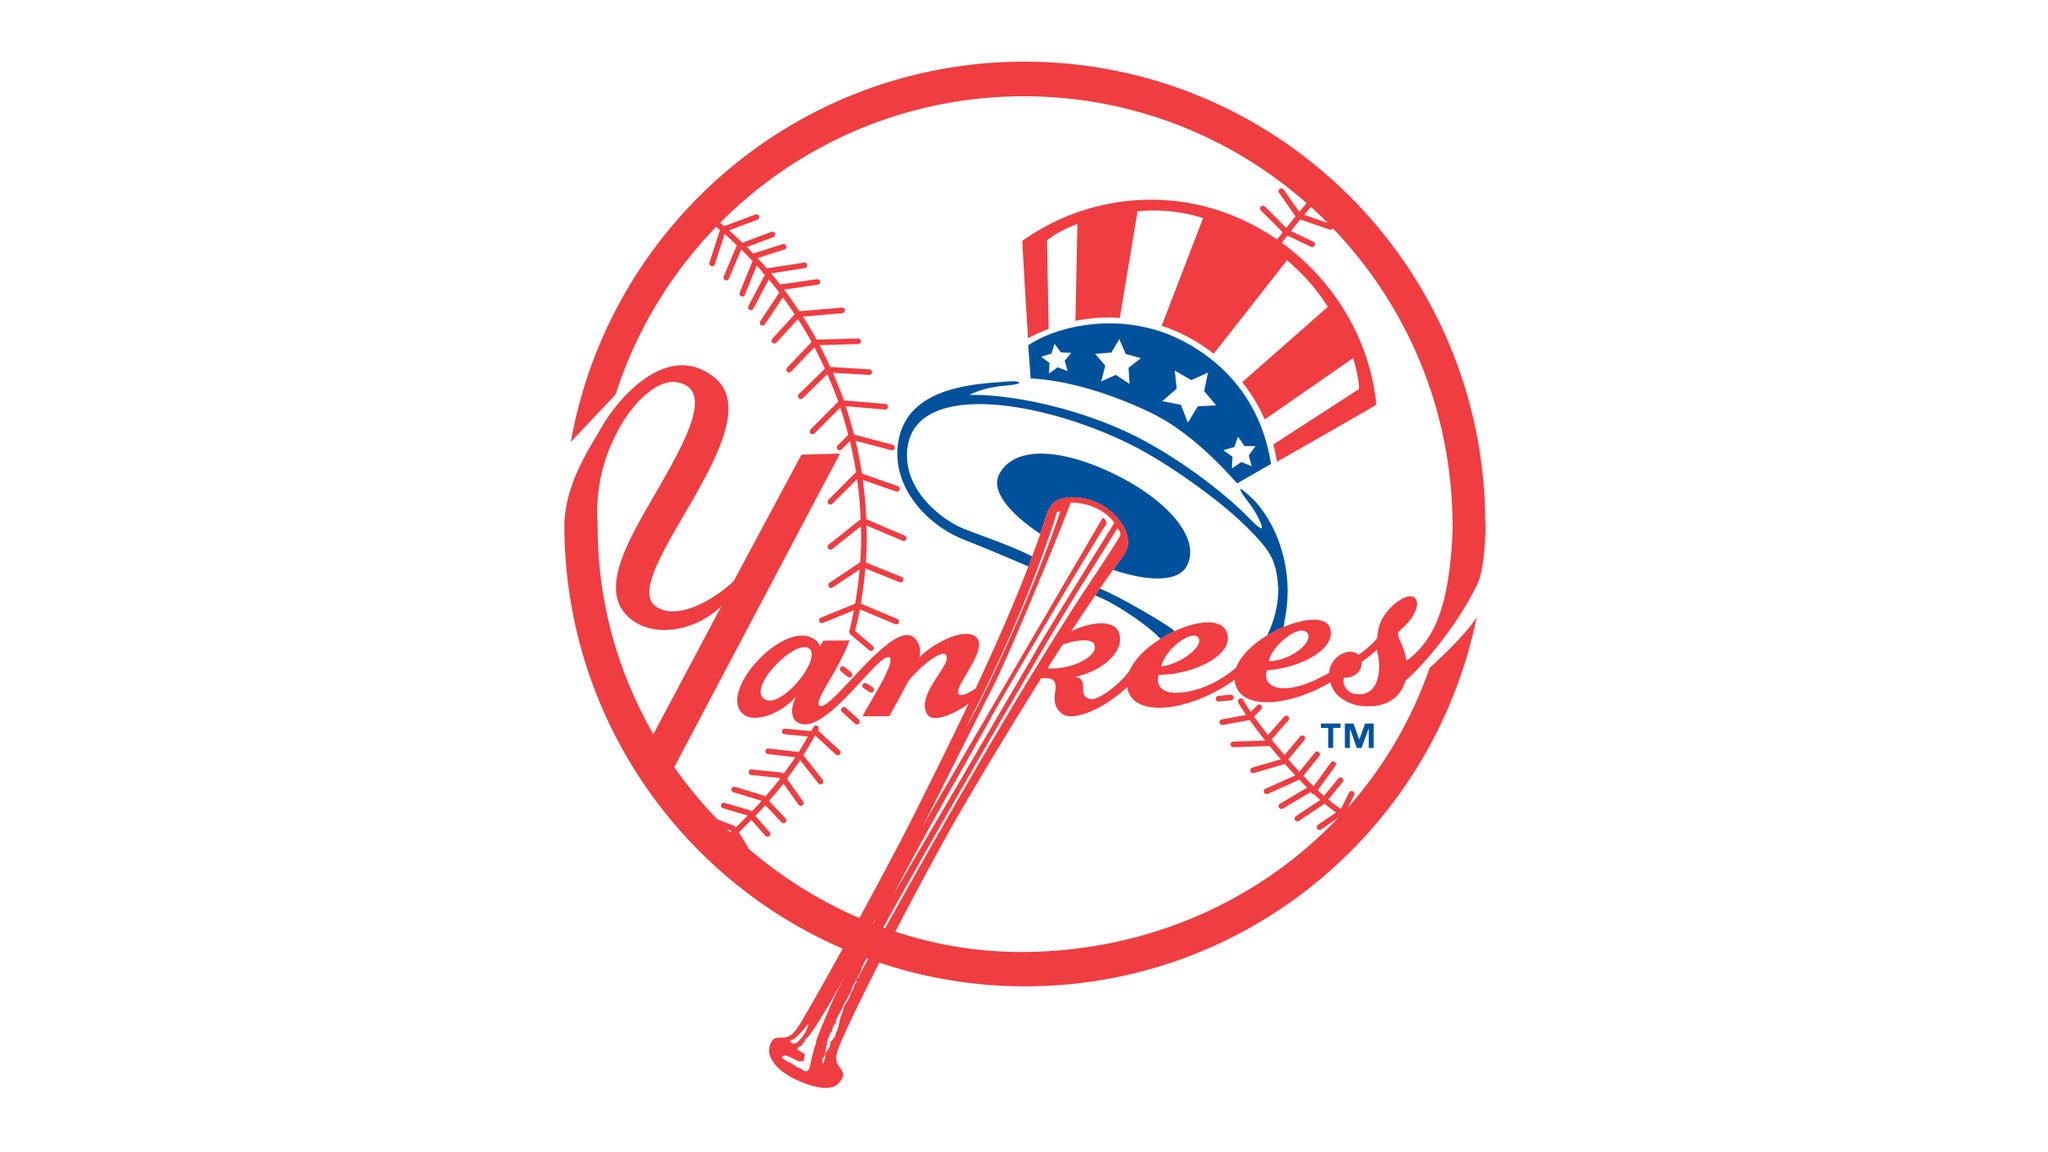 New York Yankees v. Kansas City Royals